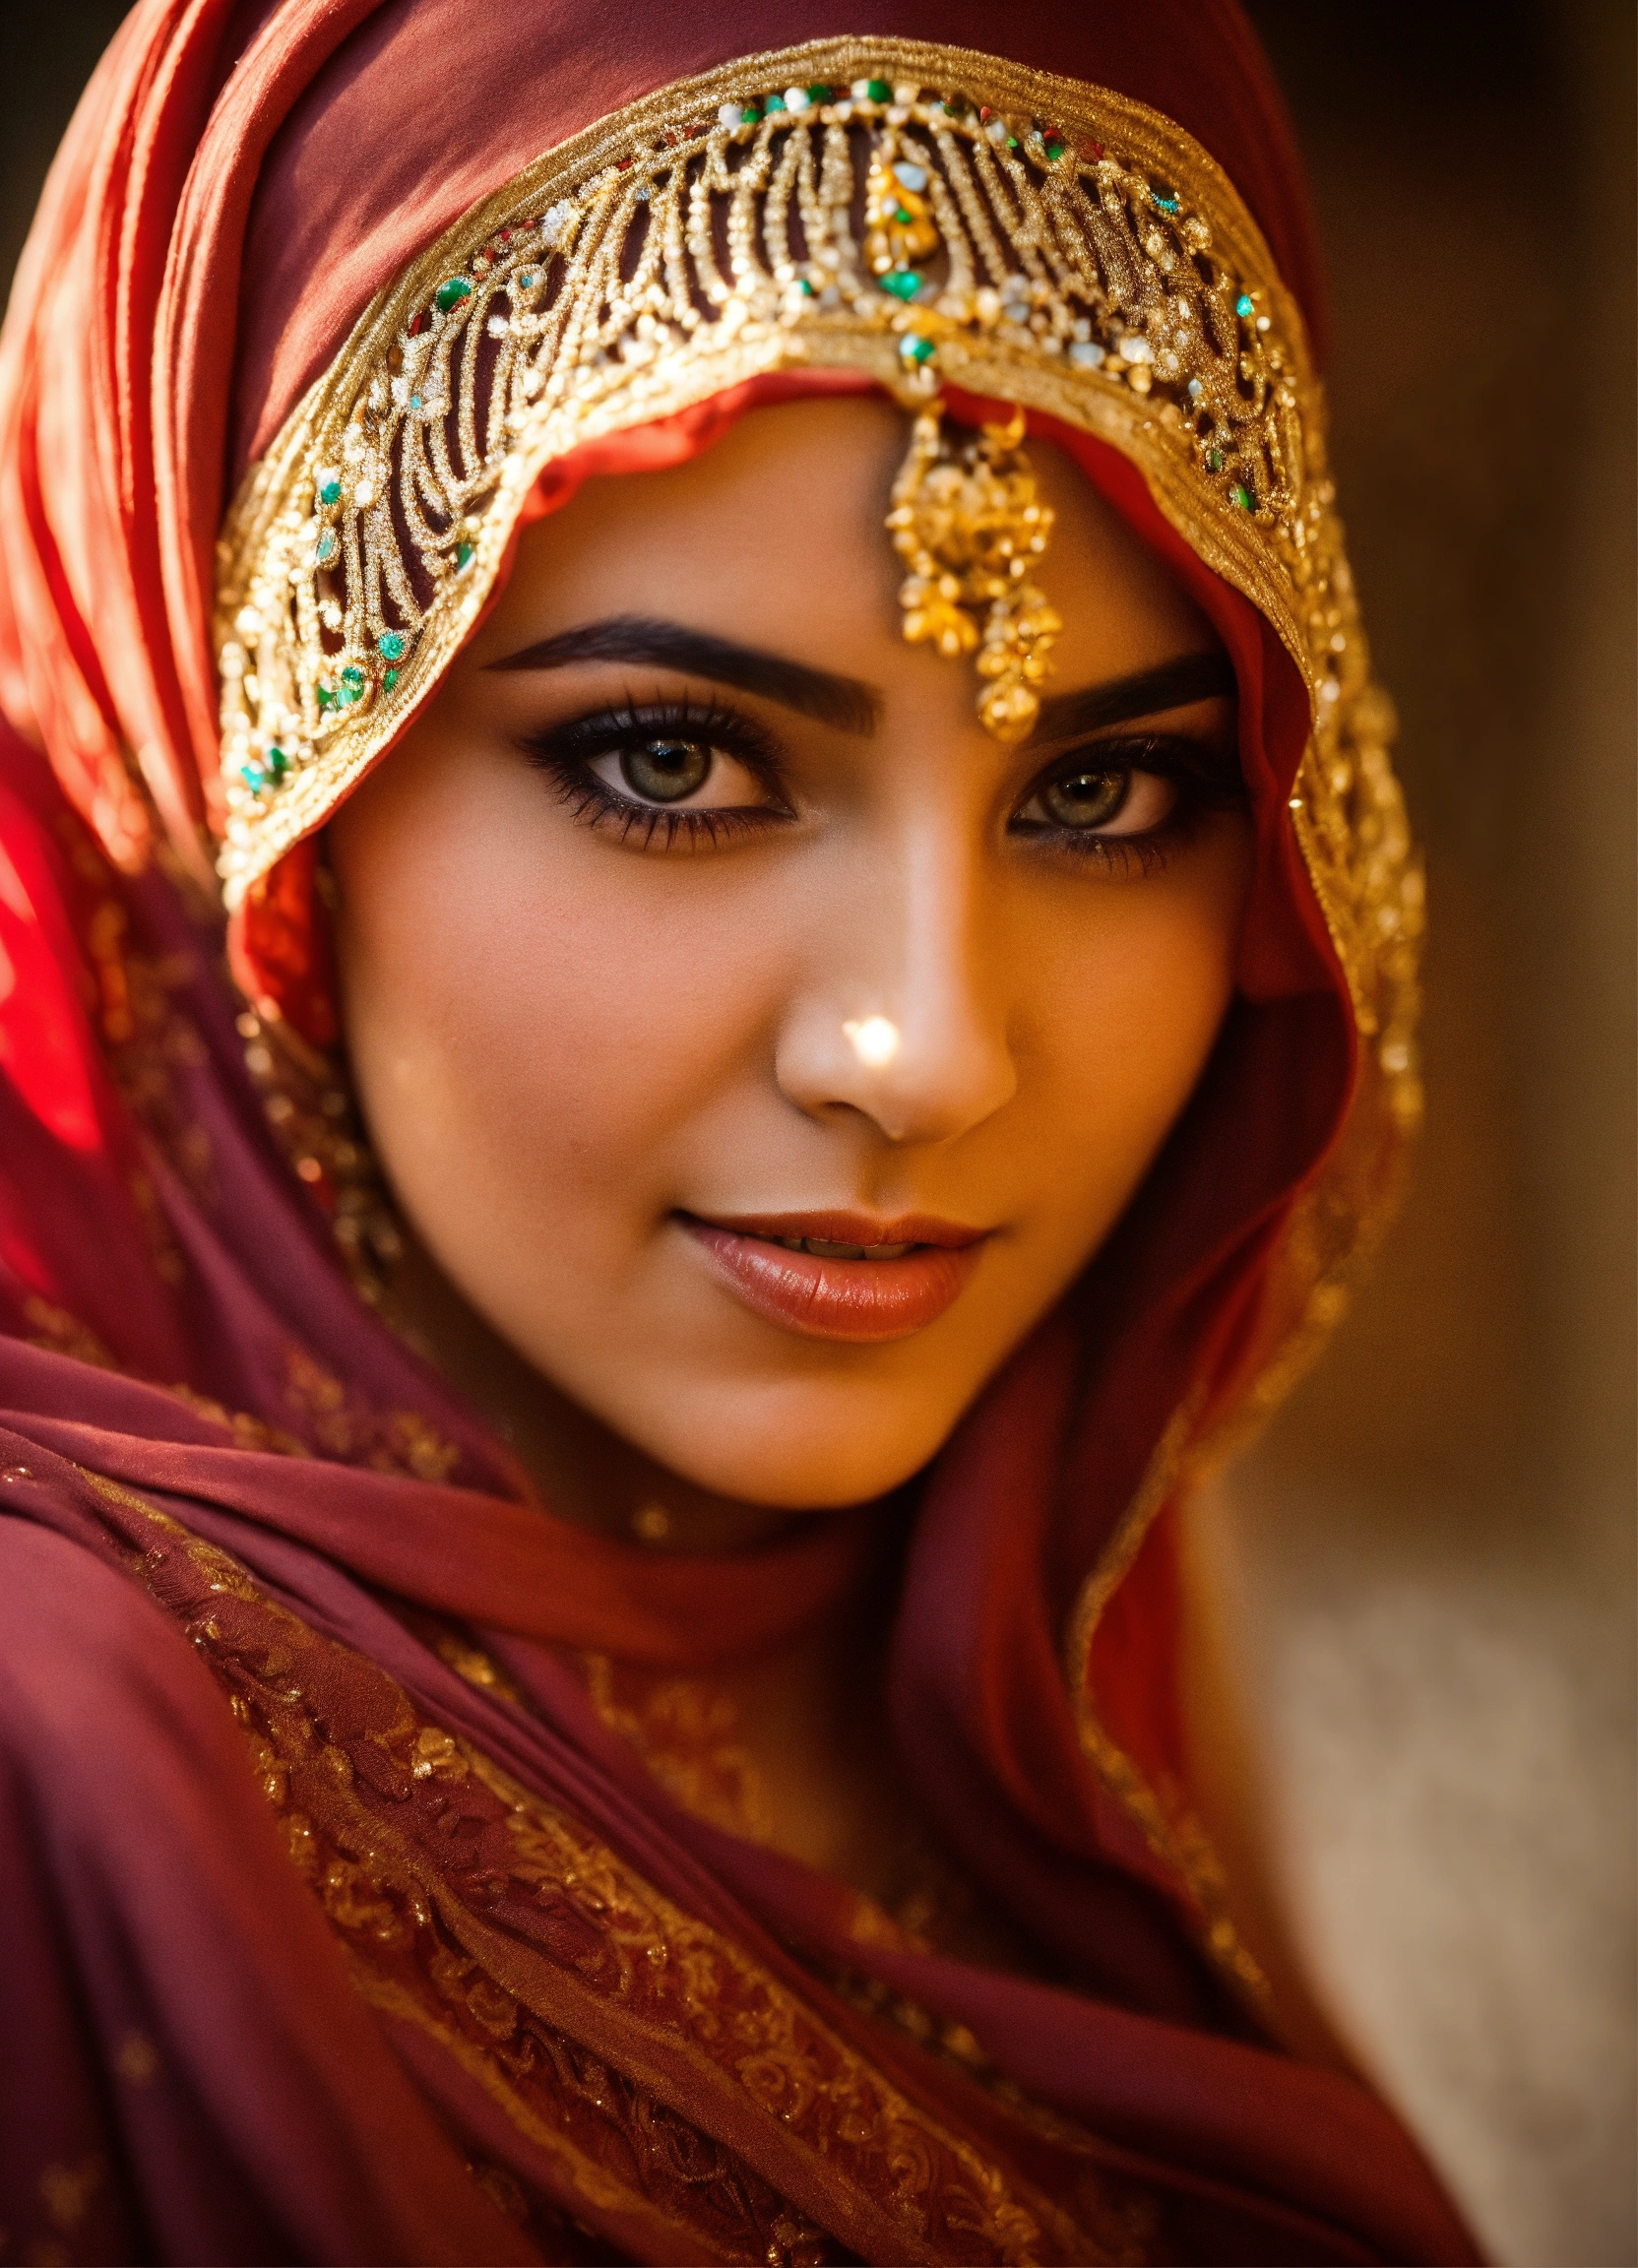 Lexica - Youthful women Arabian passionate fixed eye contact